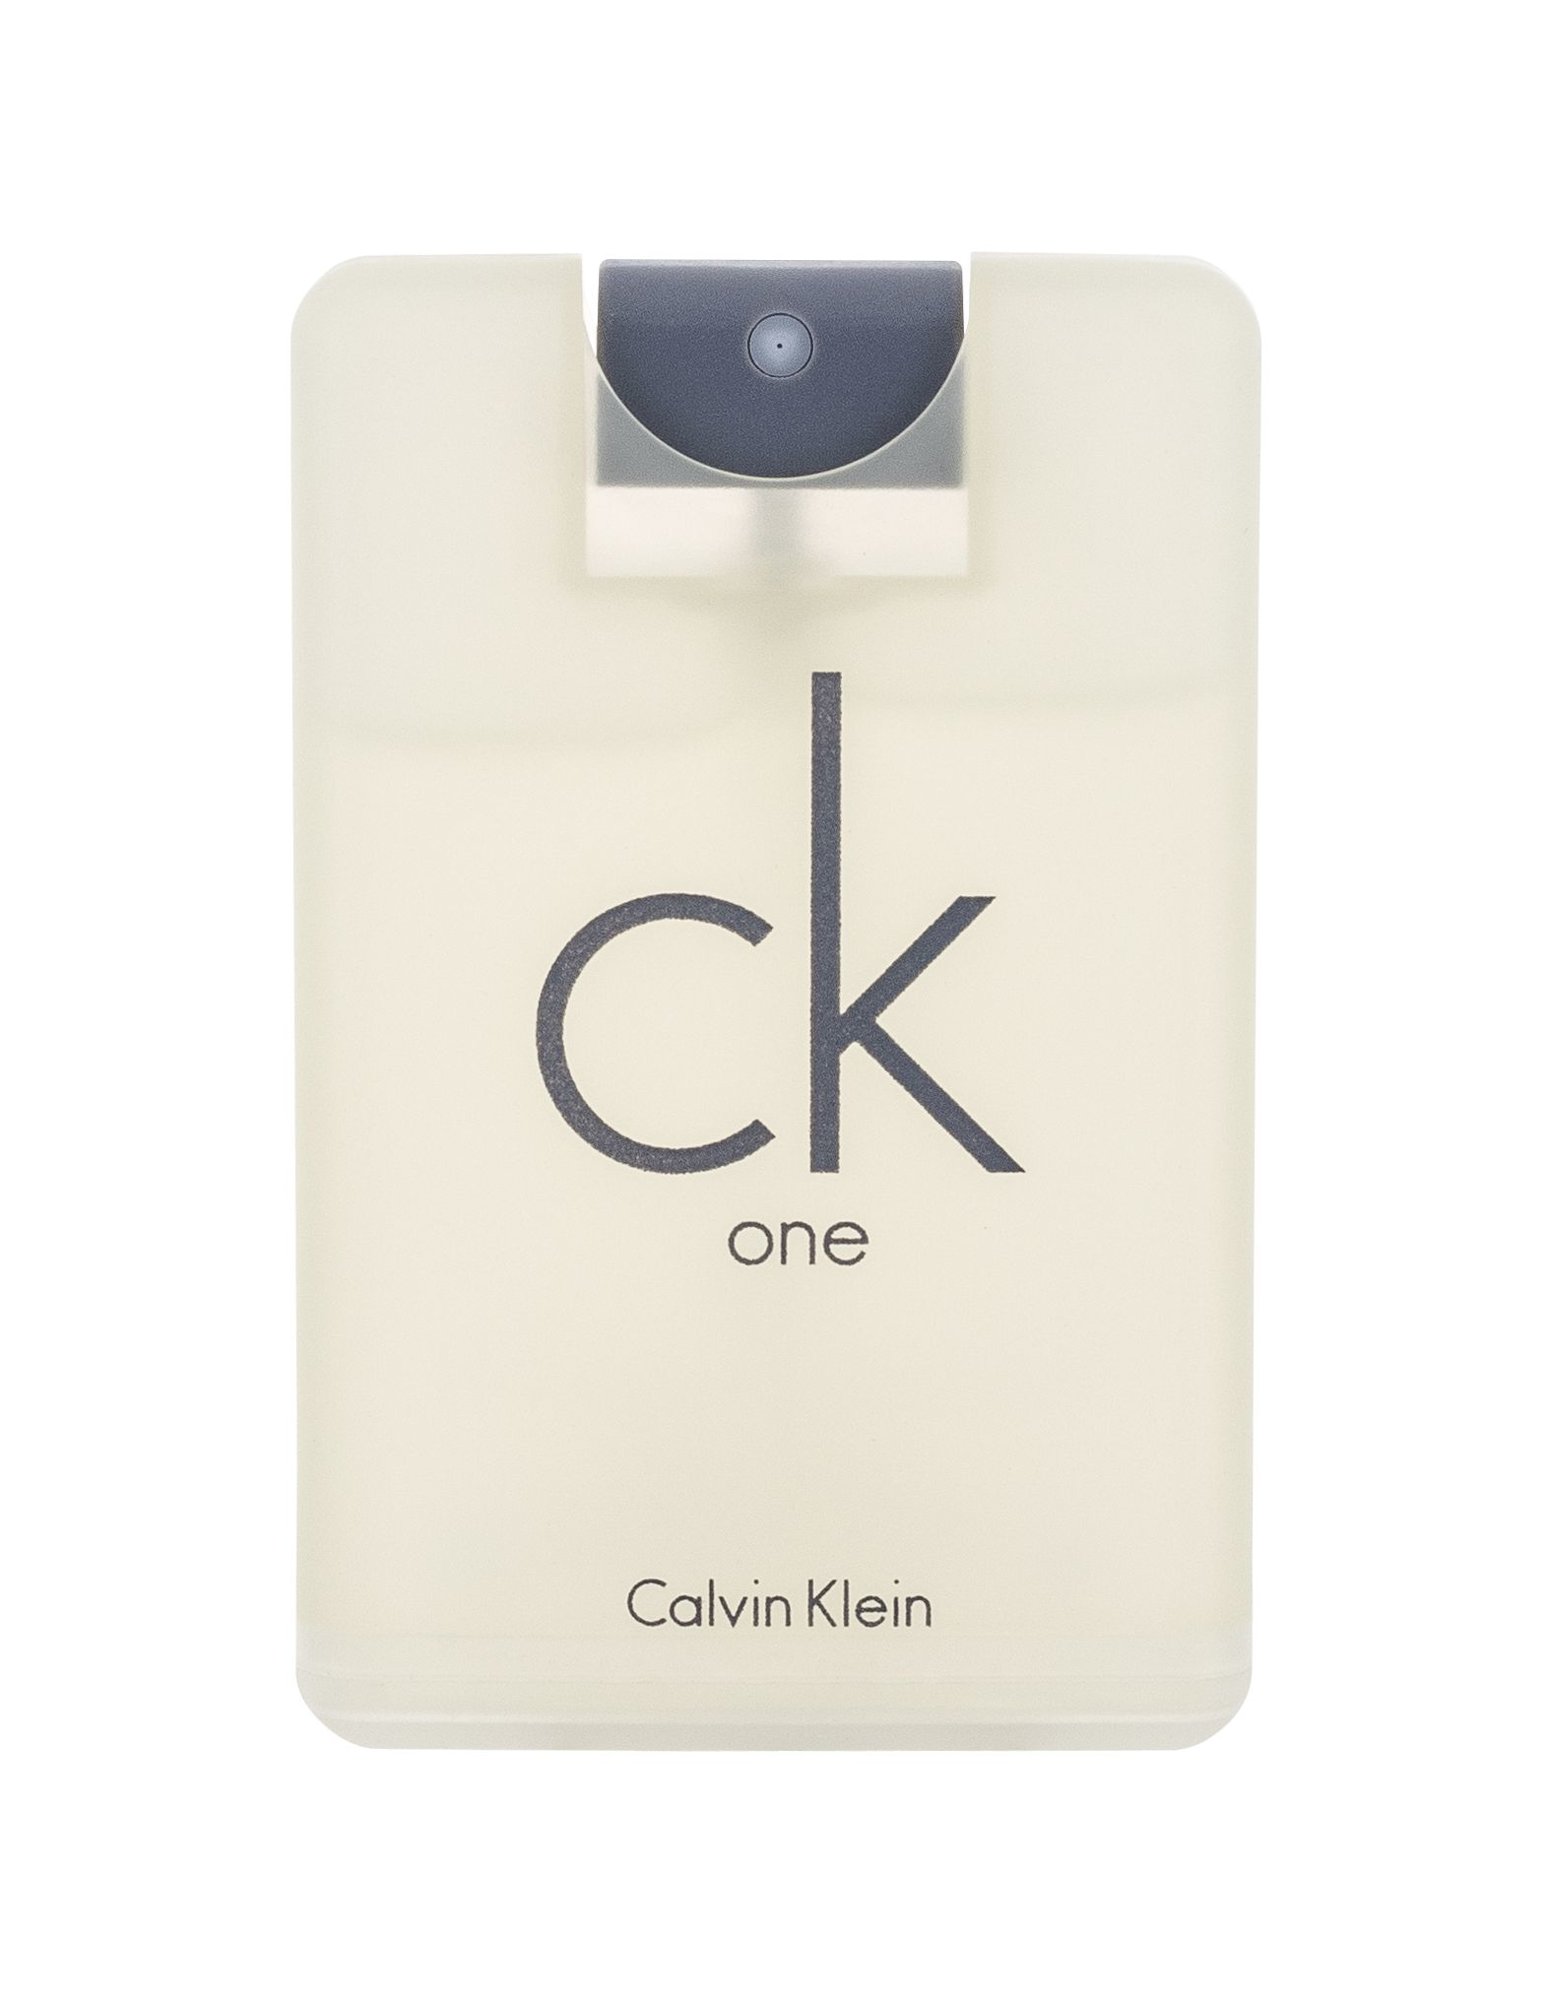 Calvin Klein CK One, Toaletná voda 10ml